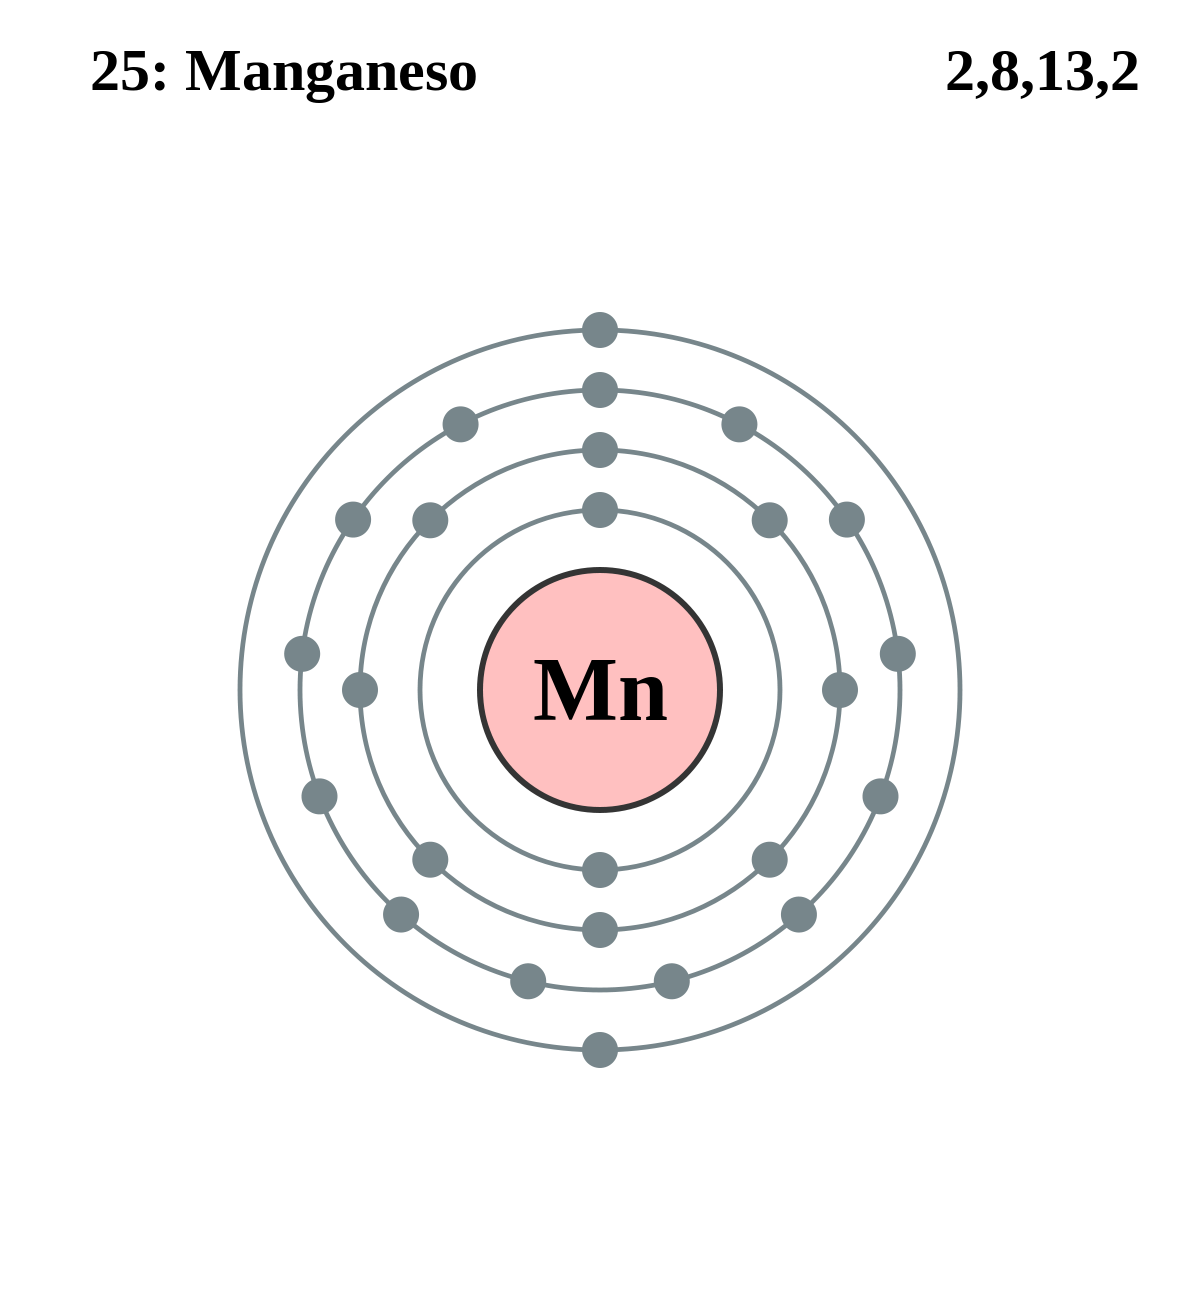 capa electrónica del manganeso